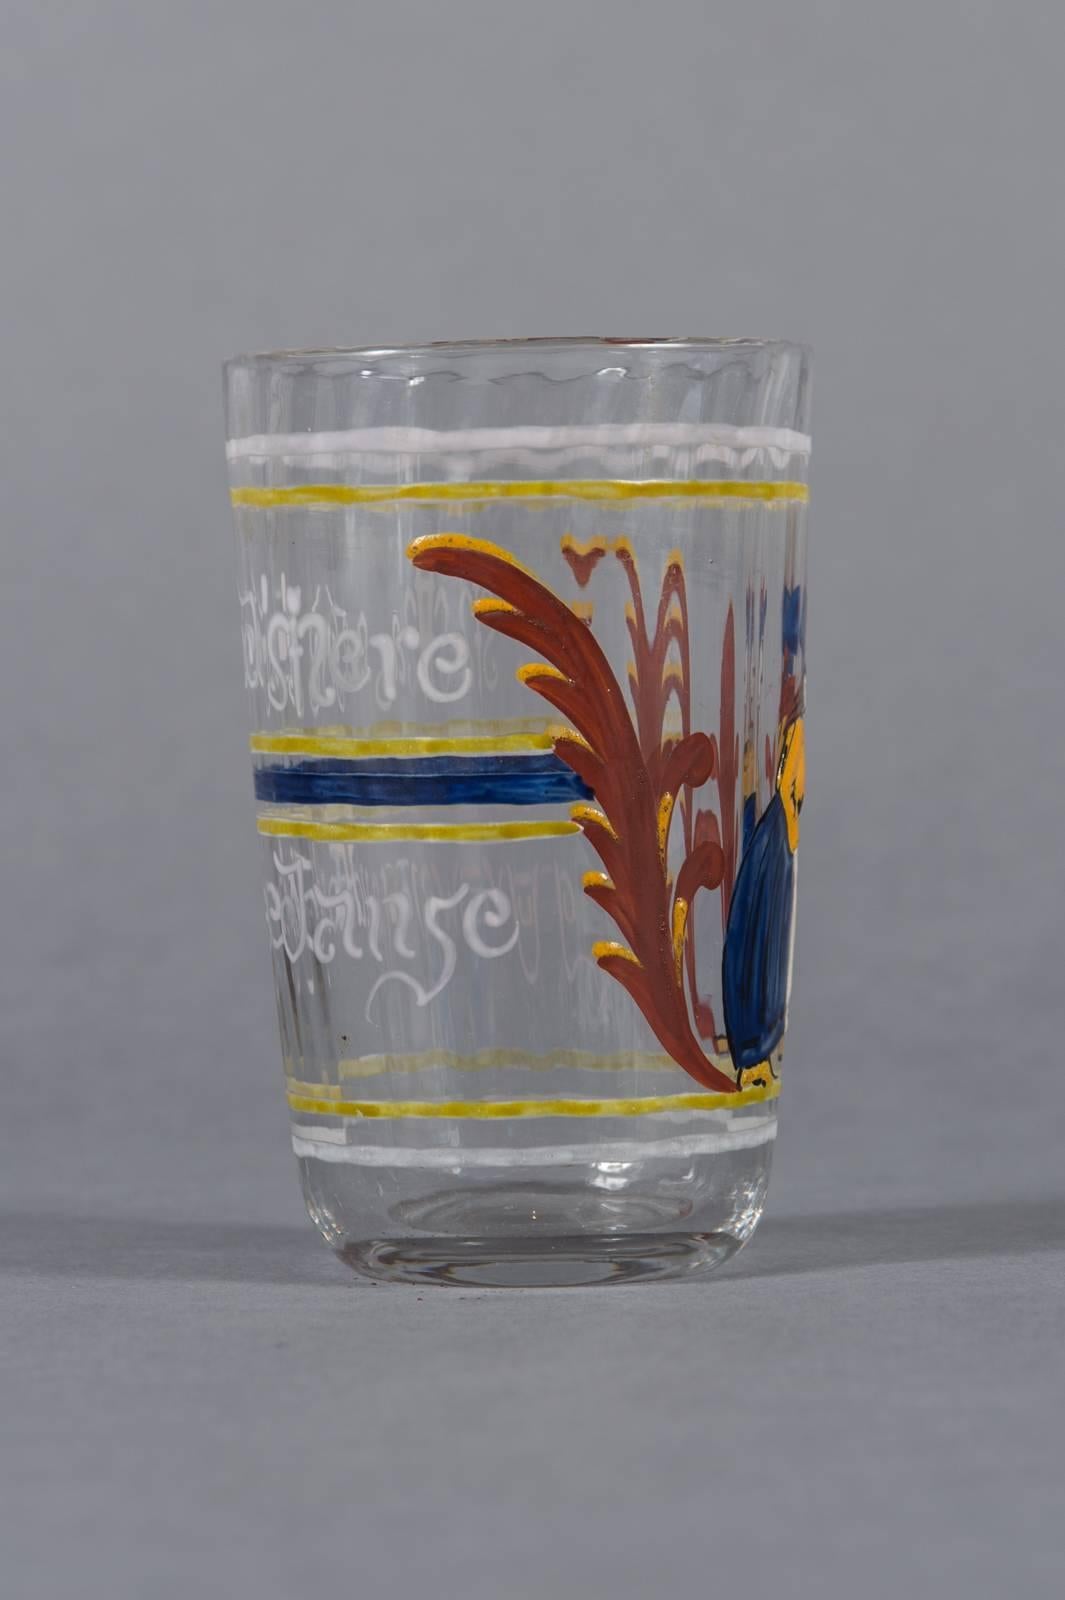 Ein ungewöhnlicher Pokal aus emailliertem Glas von Emile Galle 

Durchgehend mit Emaille-Verzierungen geschmückt

Ausgezeichneter Zustand.